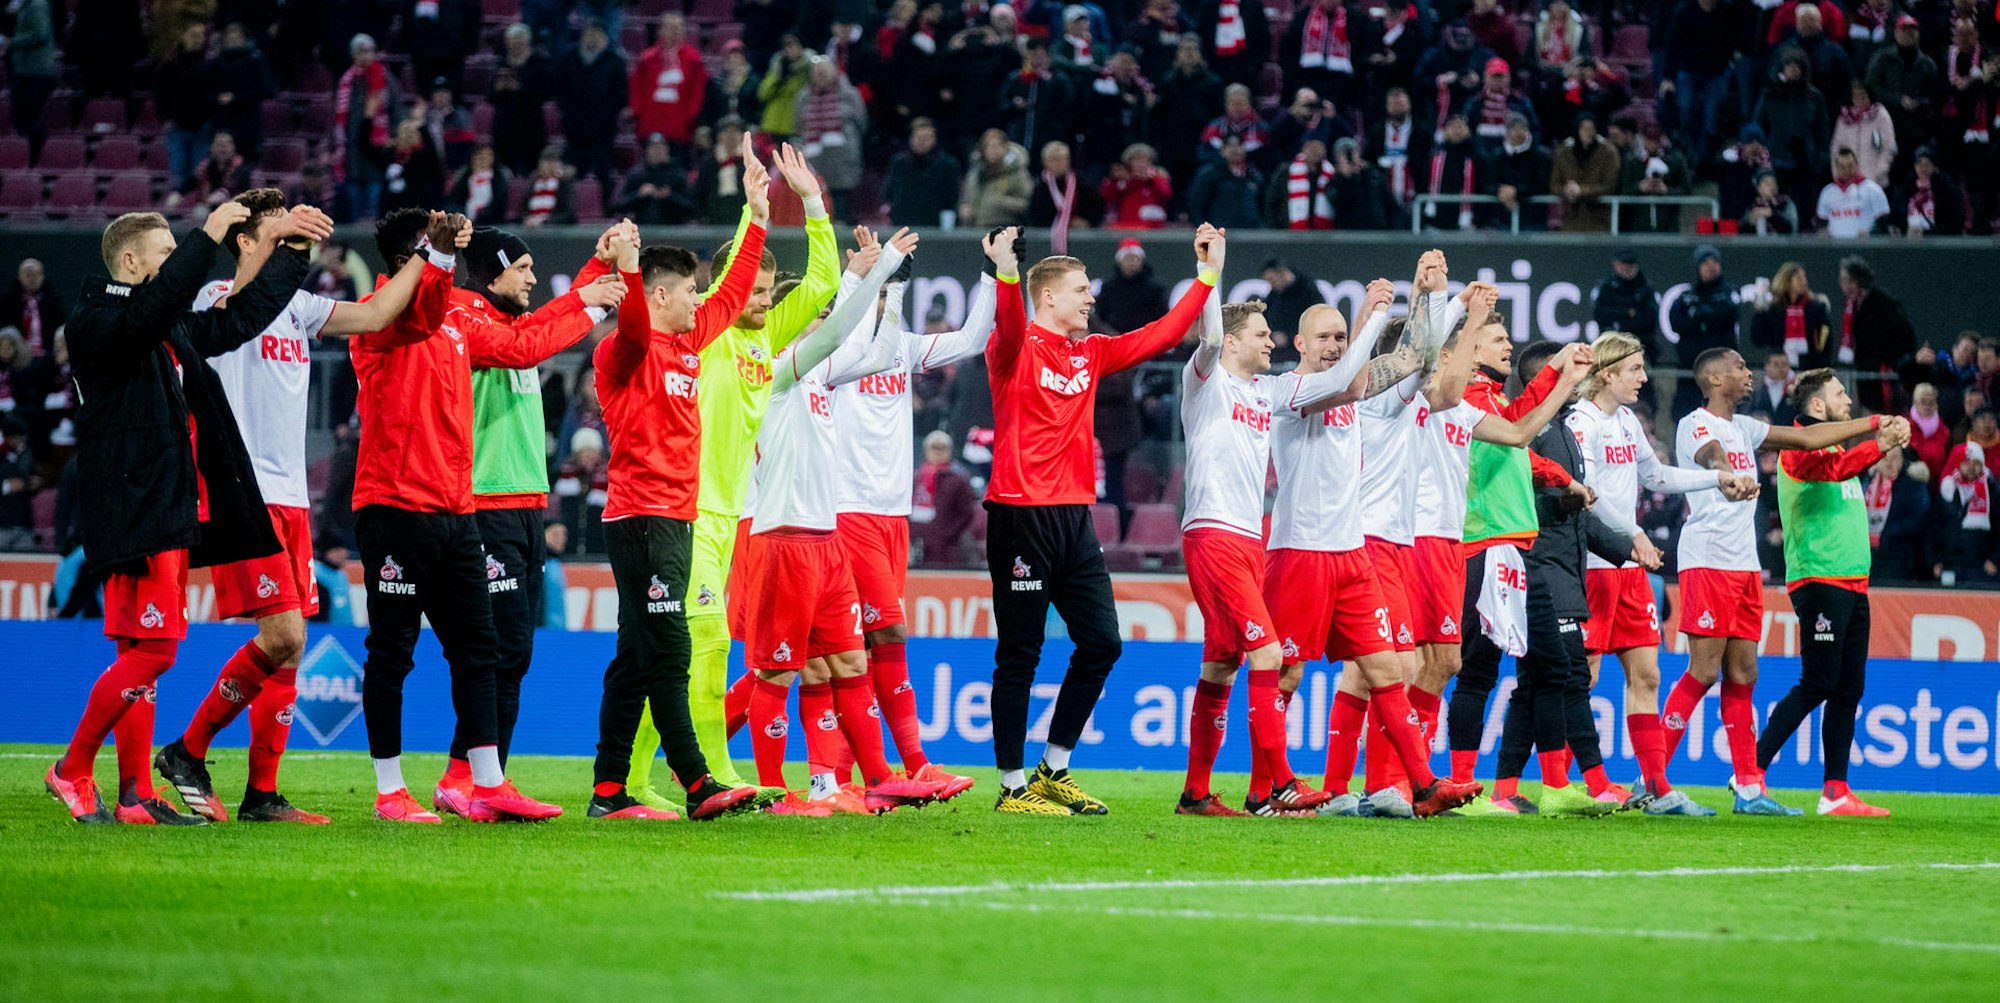 Jubel 1. FC Köln gegen SChalke